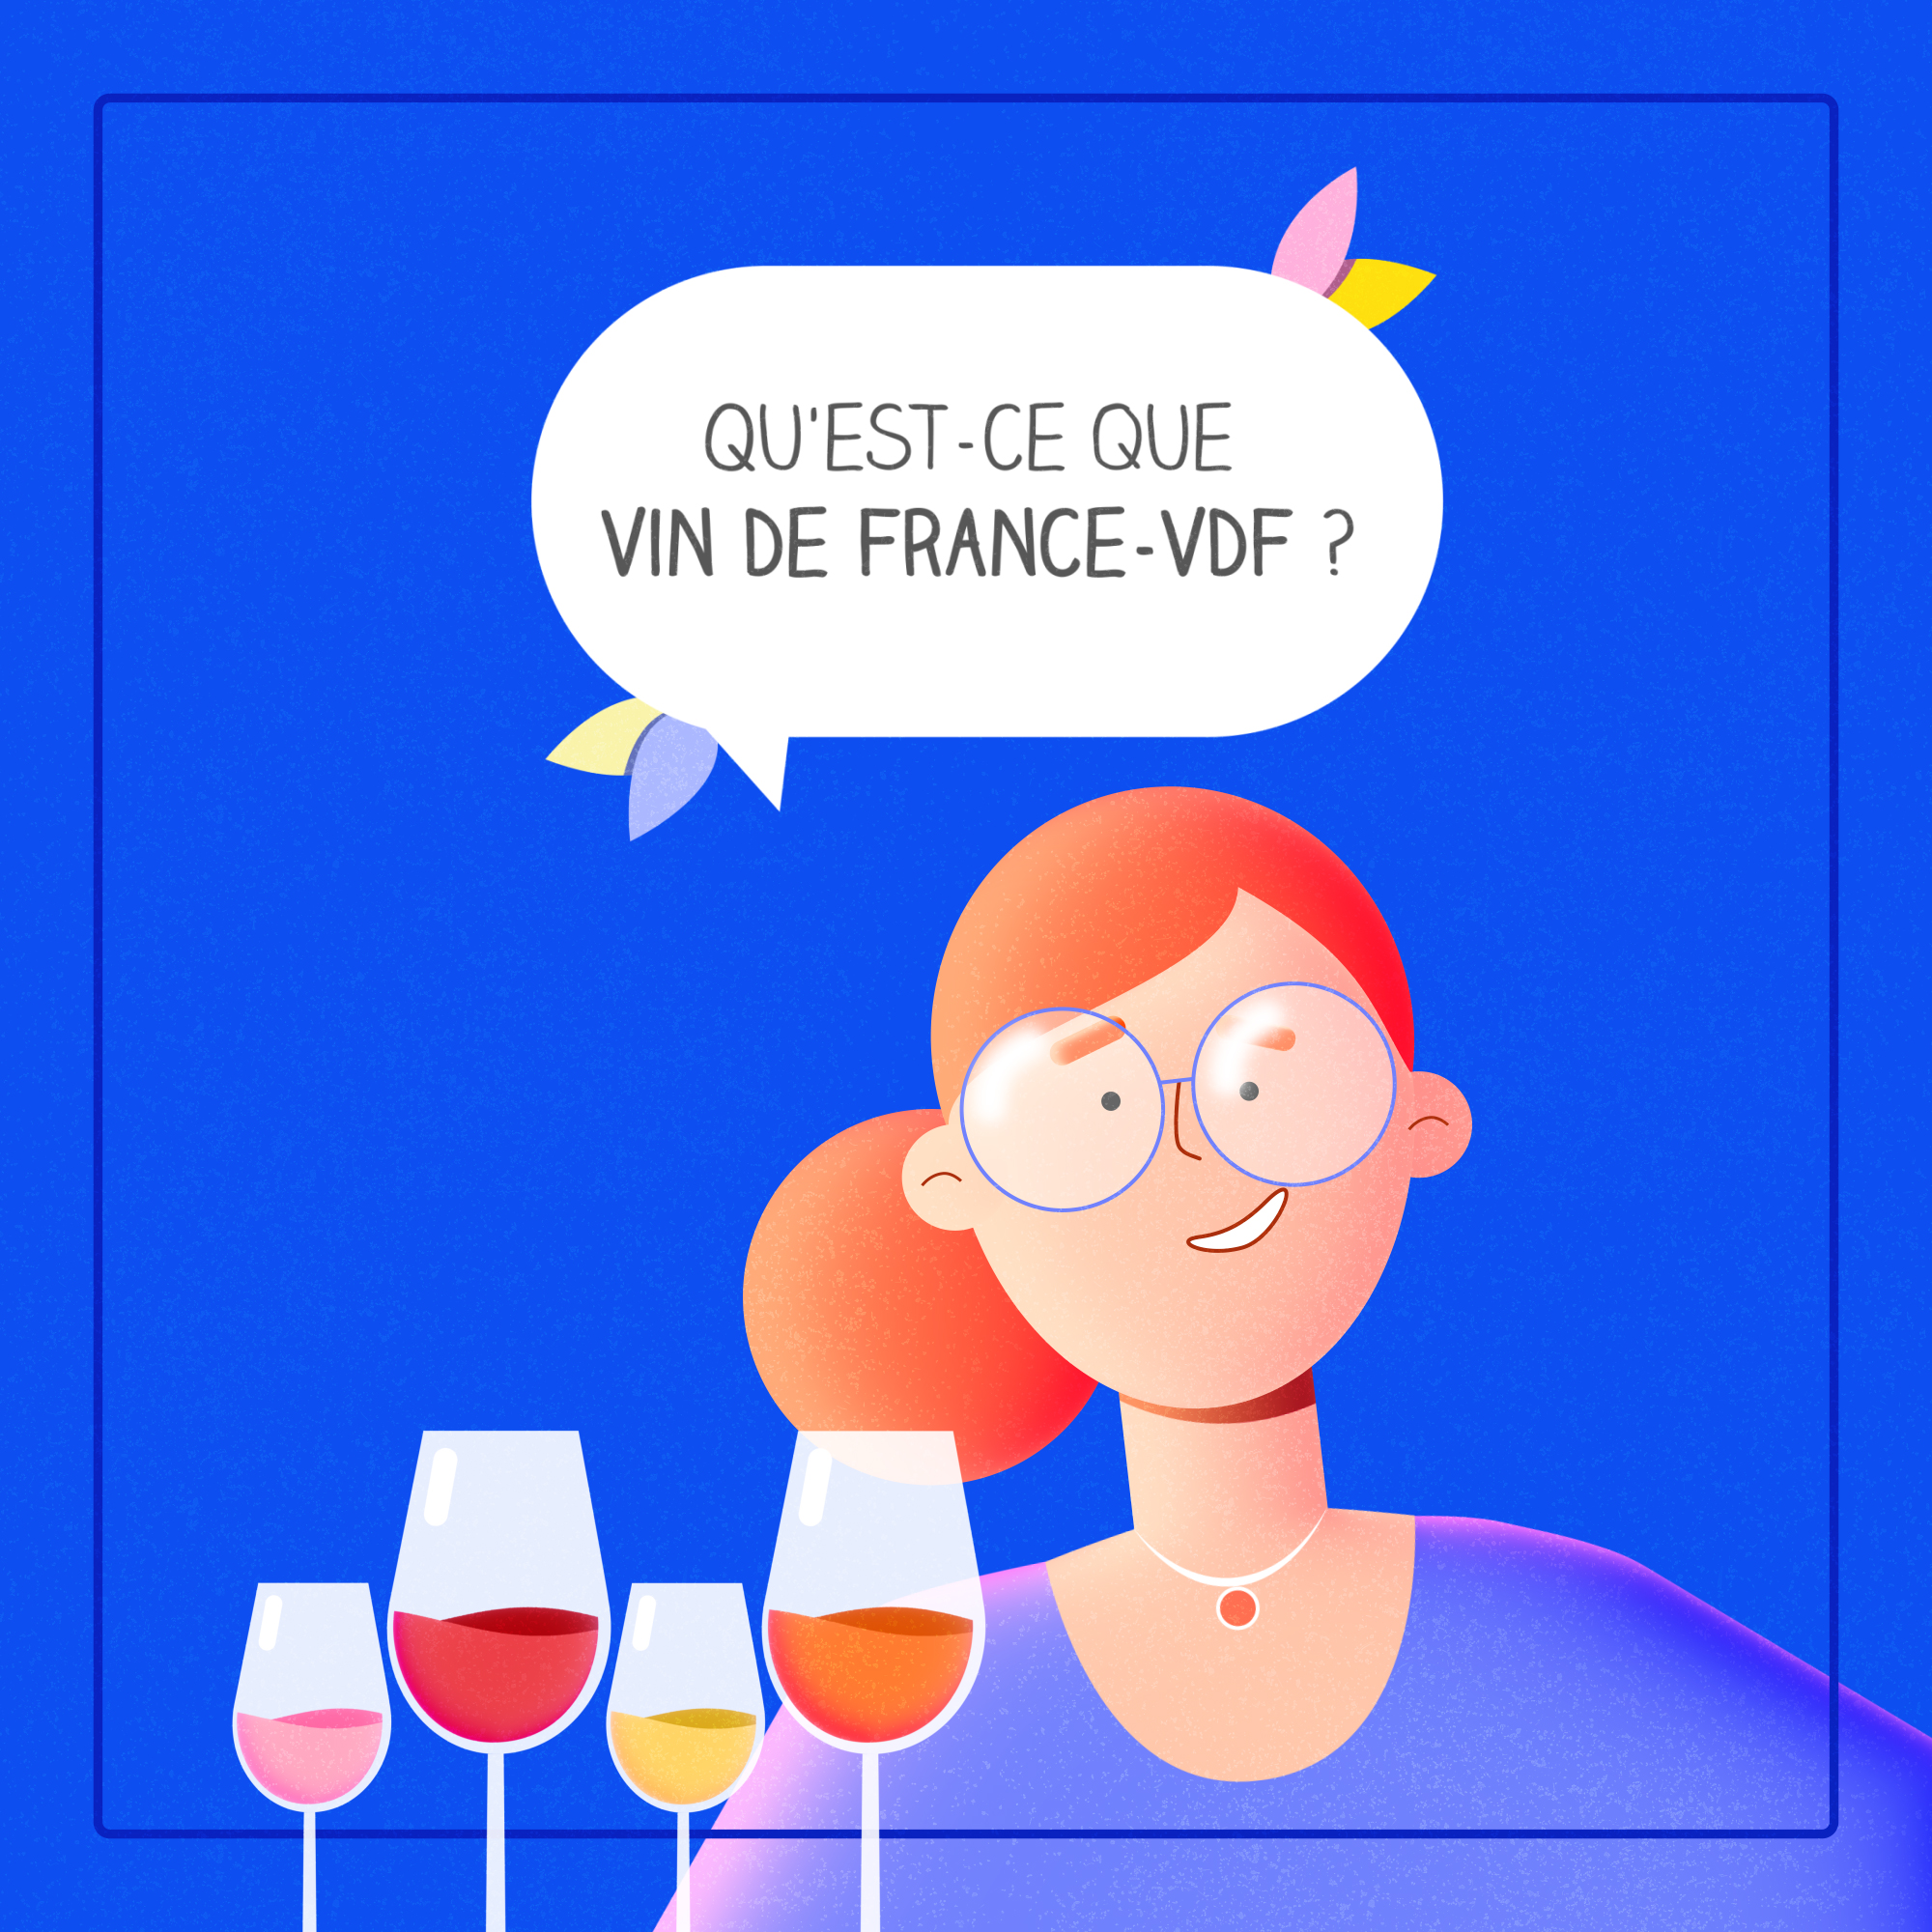 VDF - Vin De France-VDF